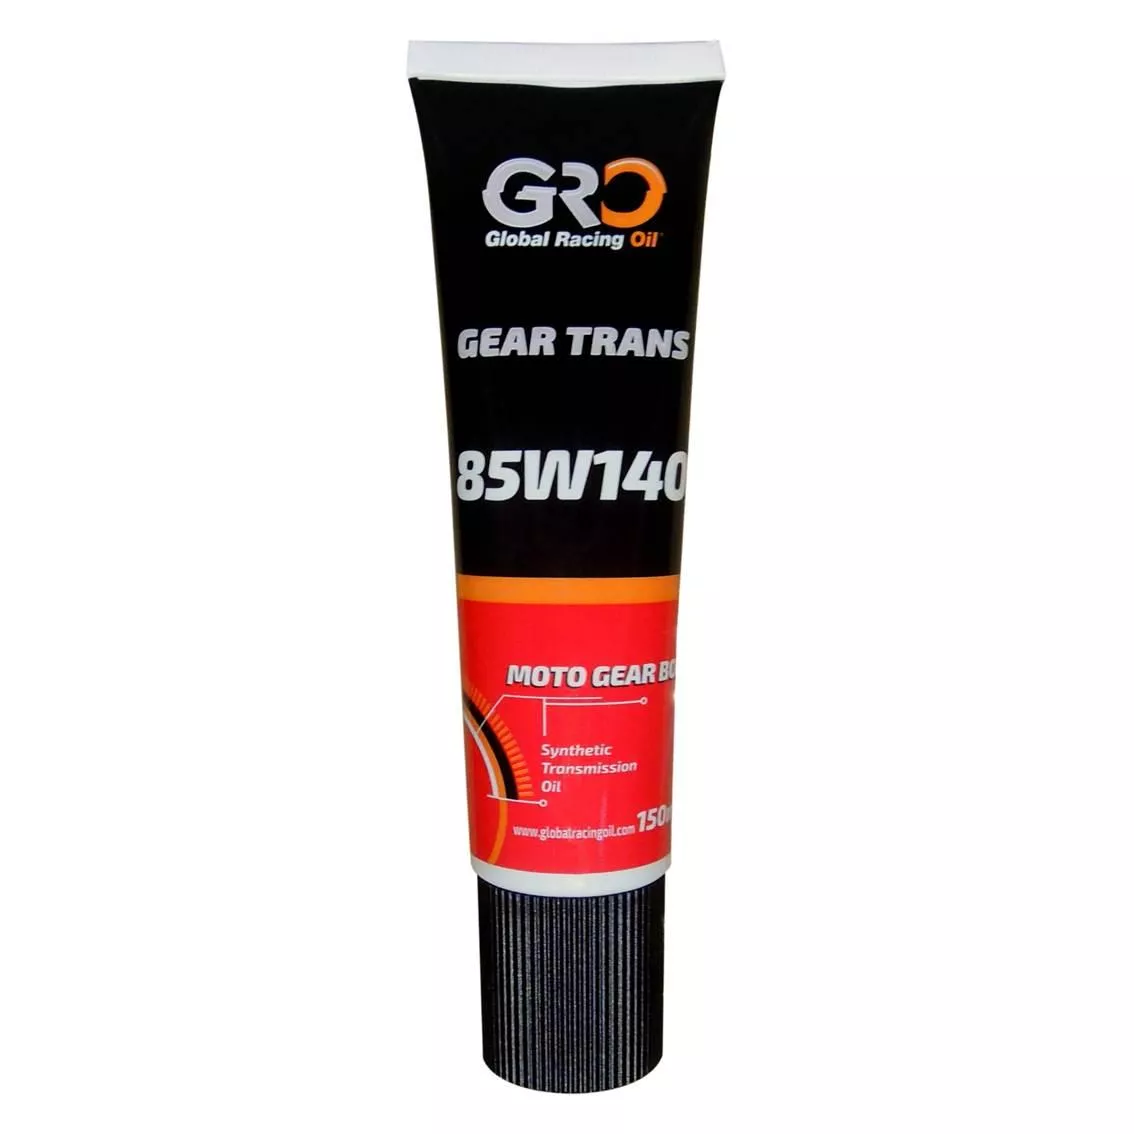 GRO GEAR TRANS 85W140 合成齒輪油